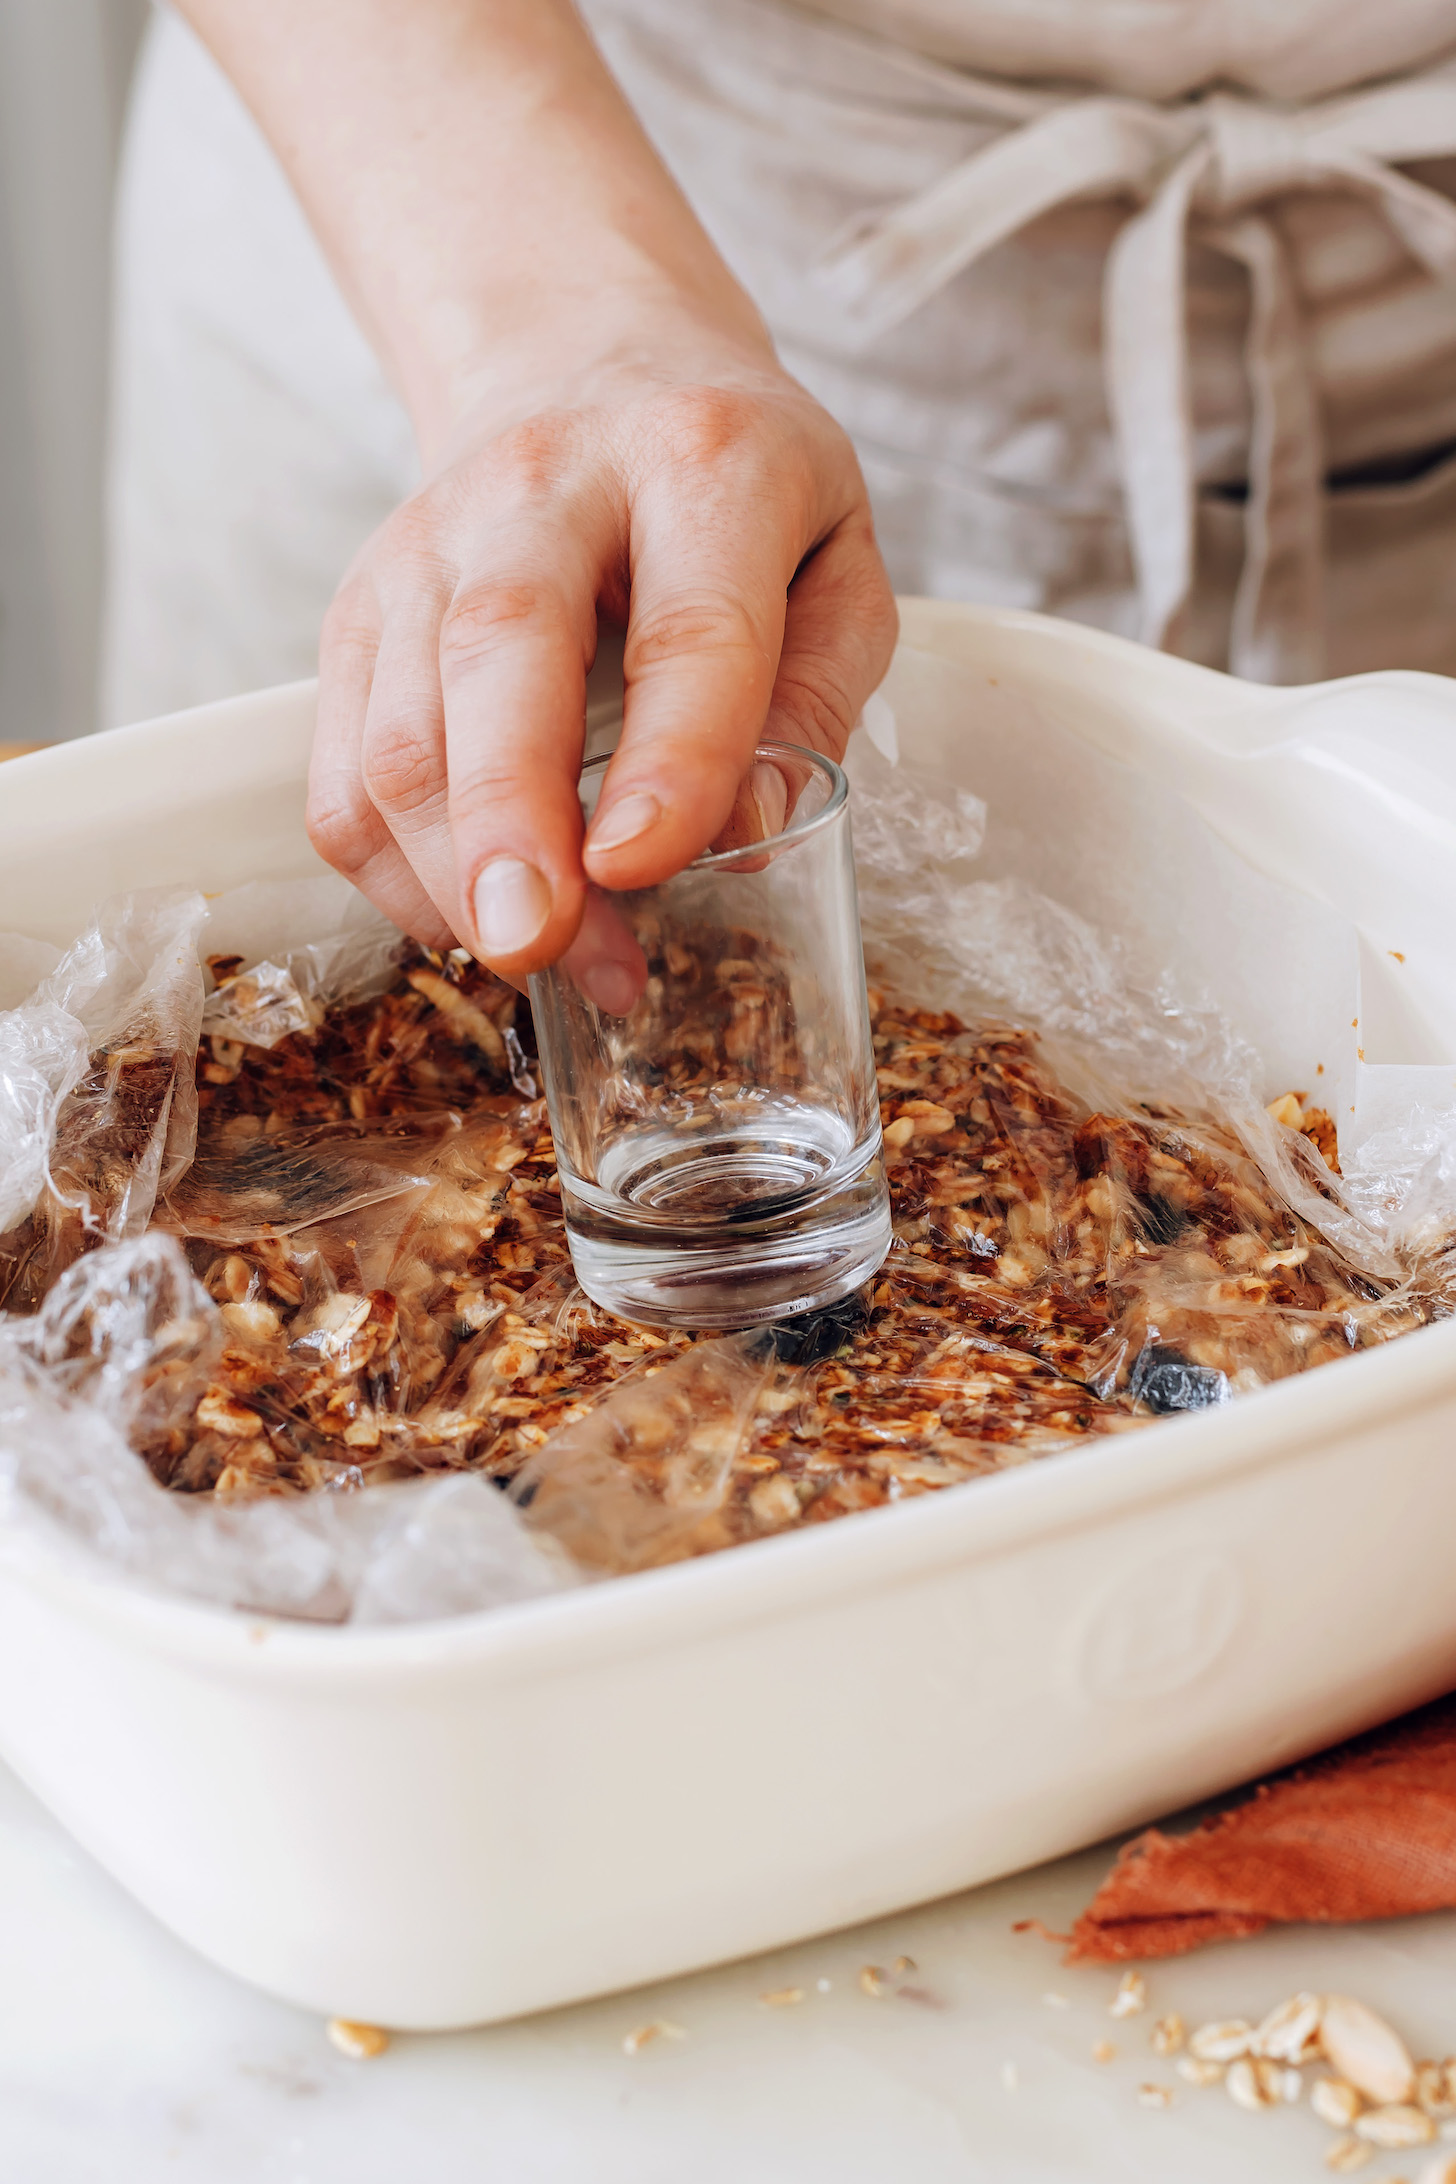 Usar un vaso para presionar barras de granola sin hornear en una sartén